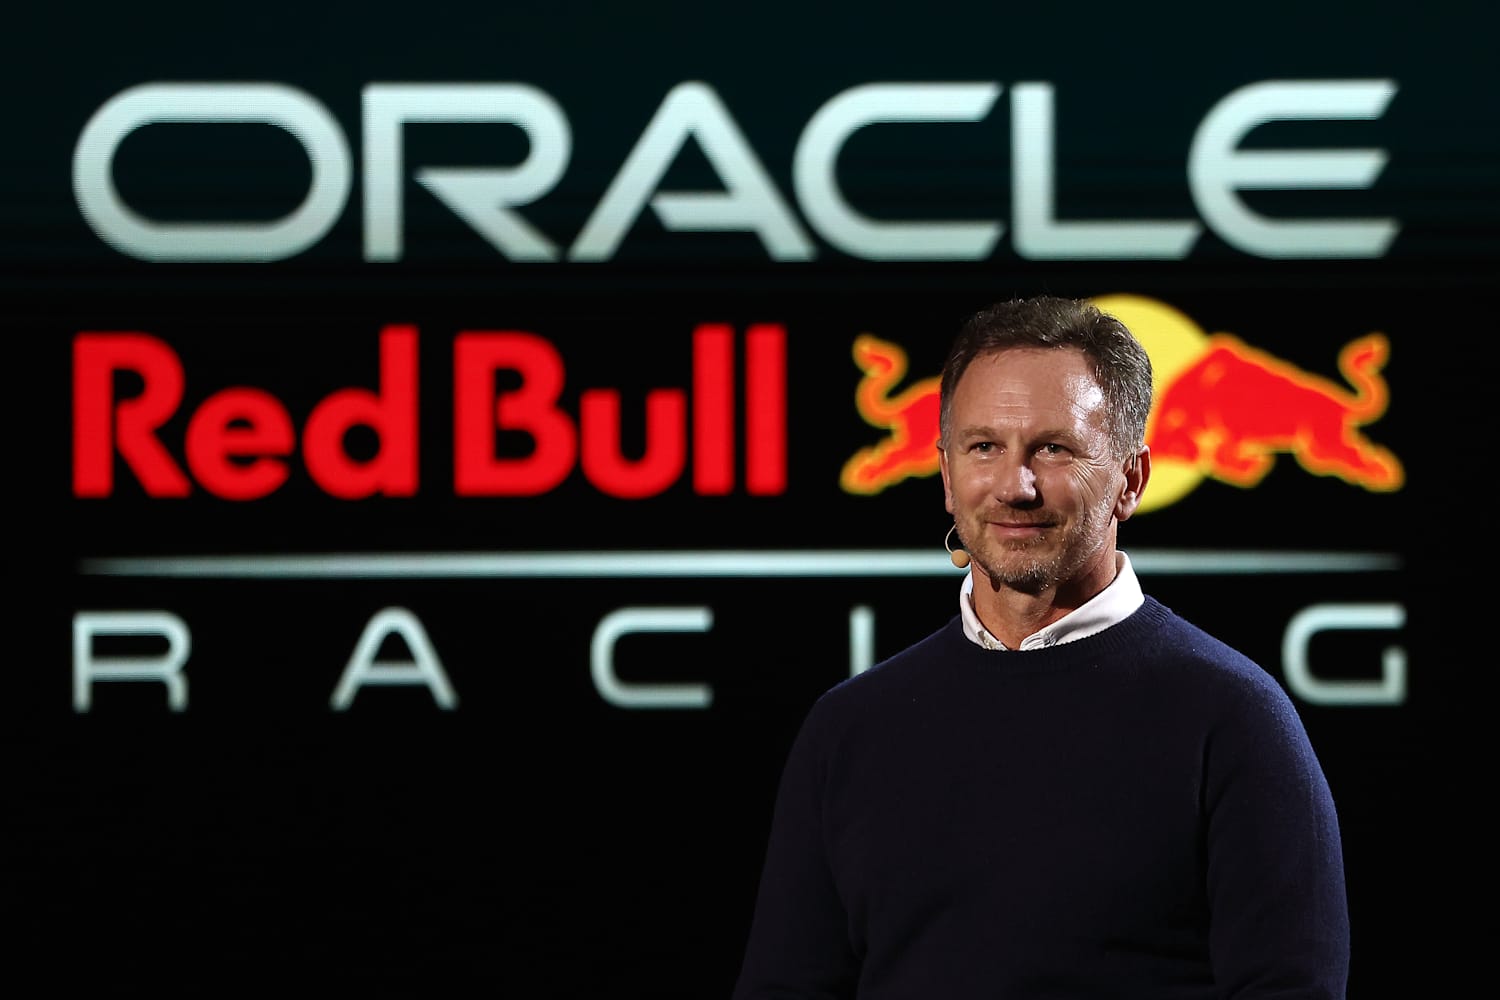 Christian Horner CBE - Red Bull Racing & Red Bull Technology